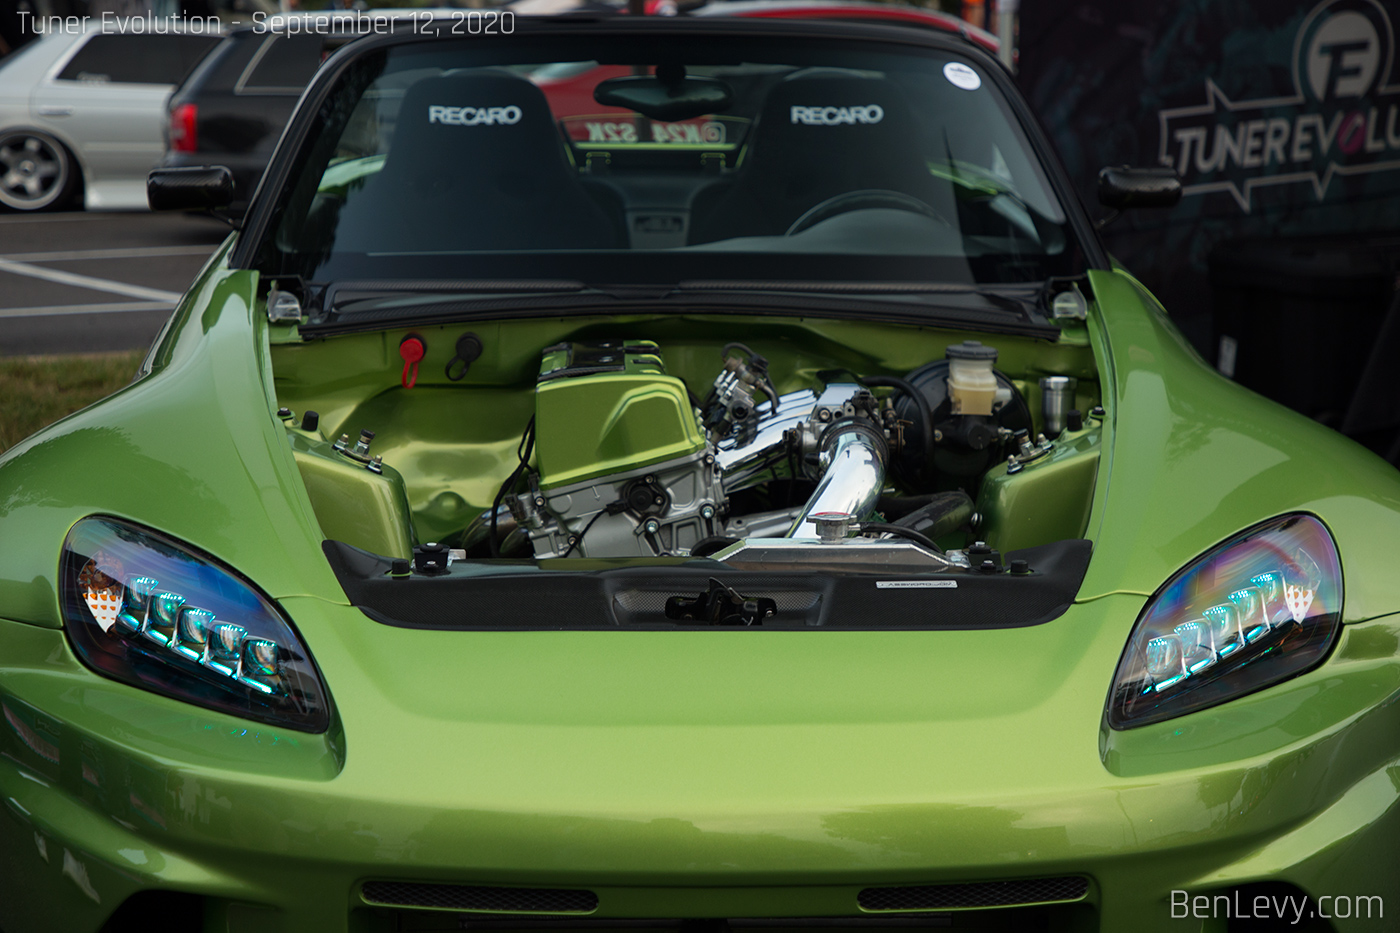 K24 Engine in Green Honda S2000